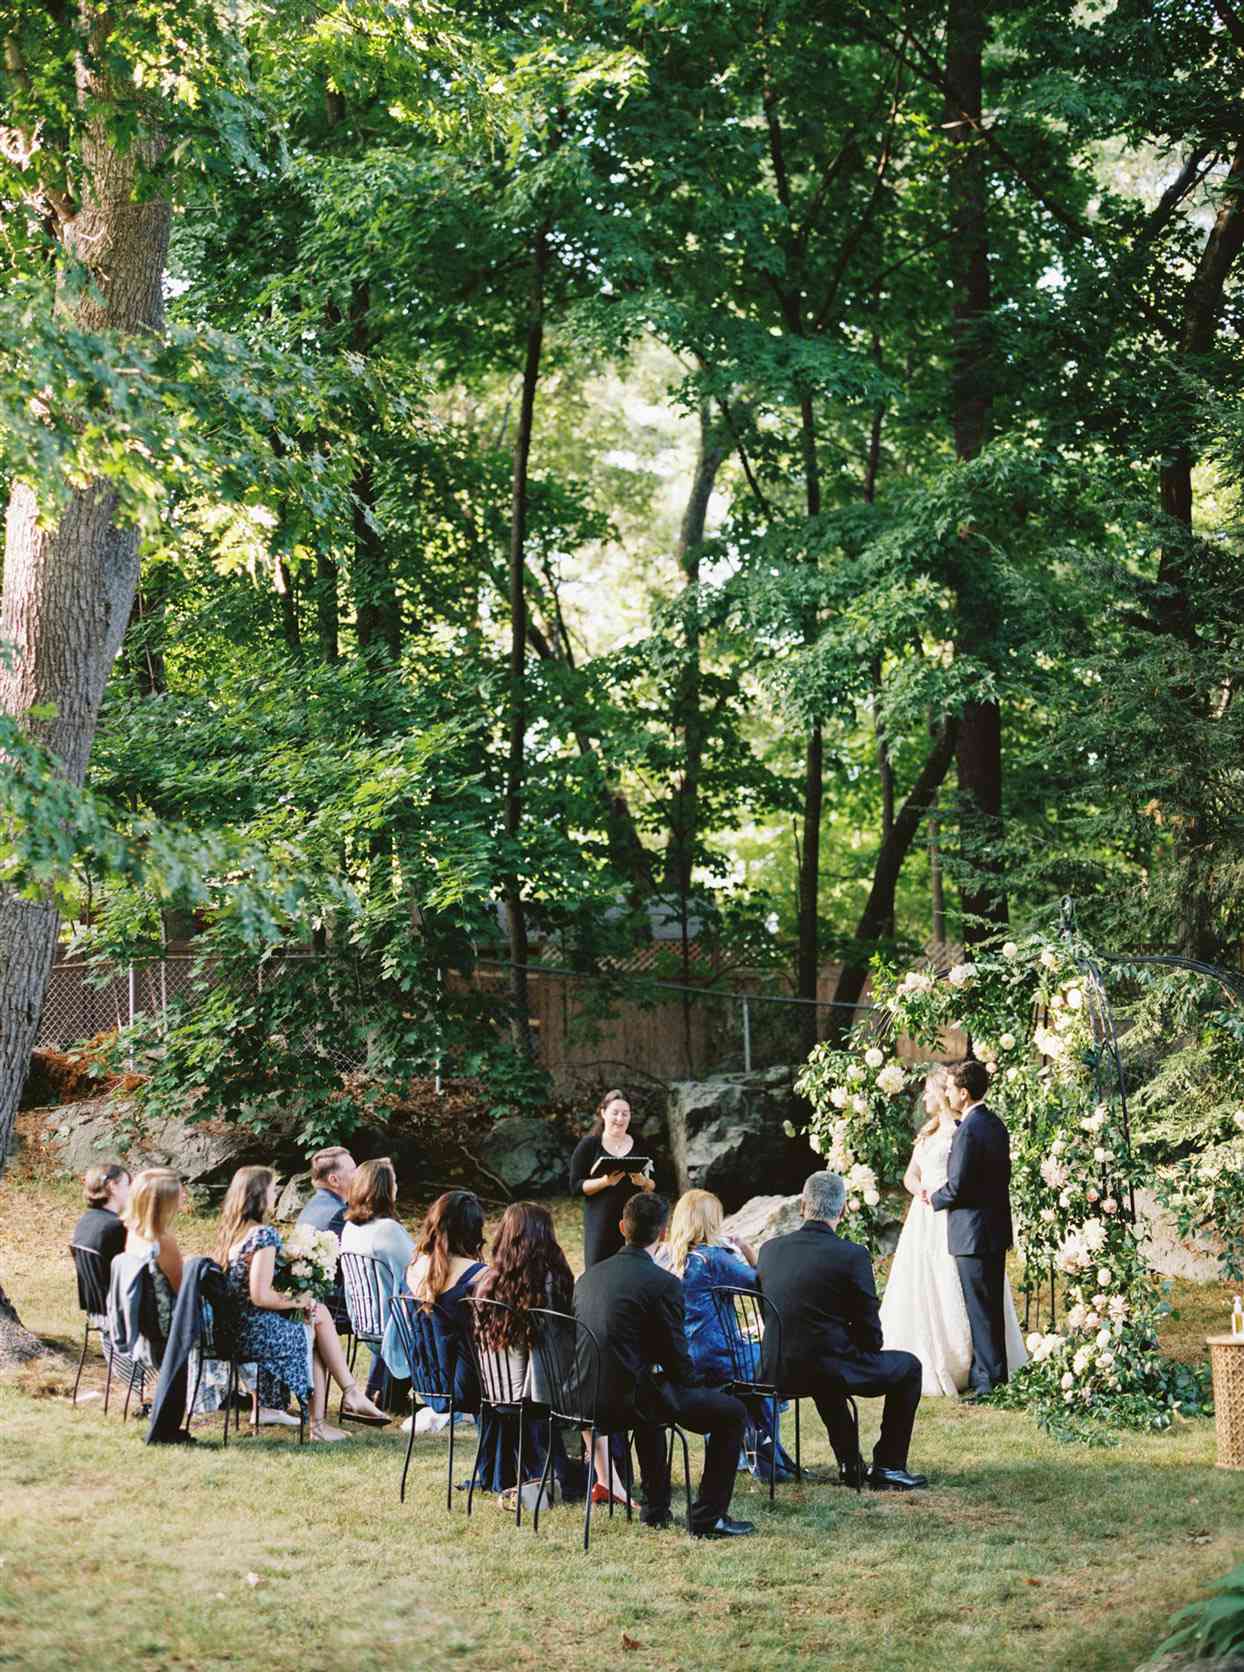 Wedding ceremony in backyard